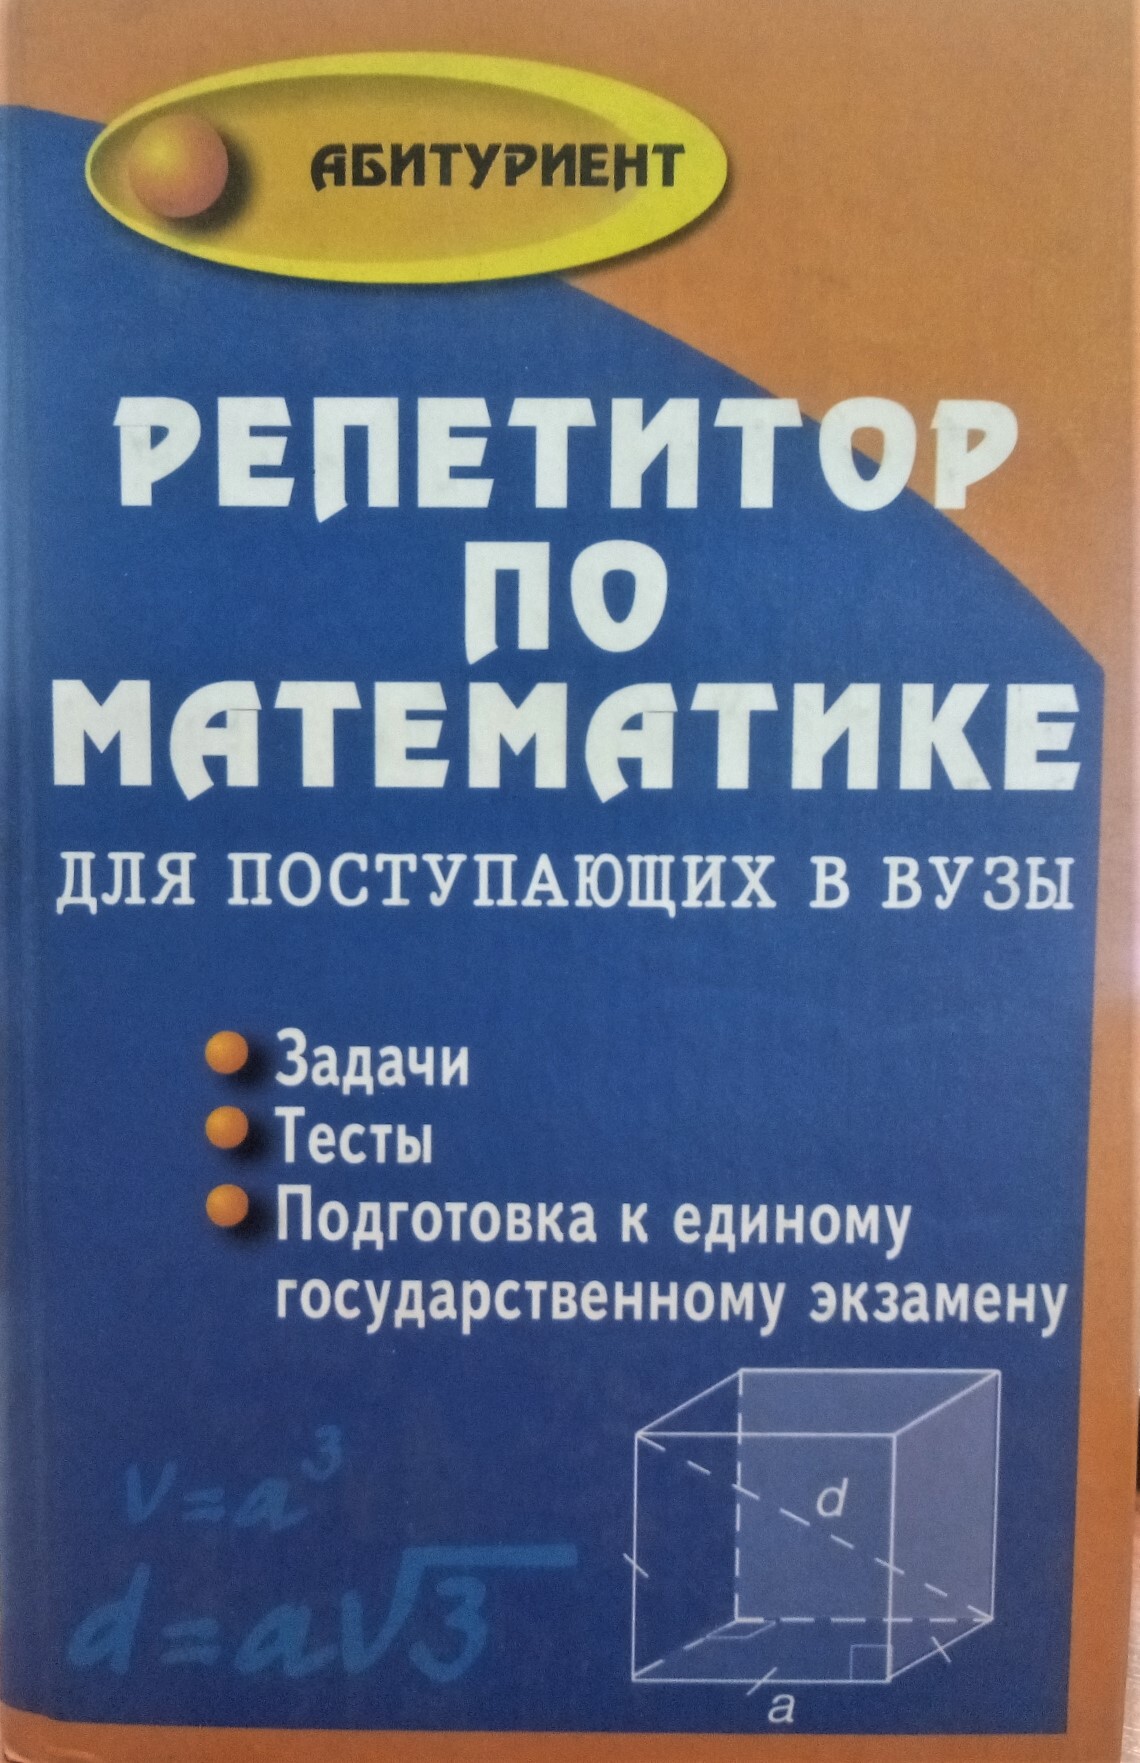 Балаян 5 класс. Книга по математике для поступающих в вузы. Репетитор по математике для поступающих в вузы. Репетитор по математике книга.